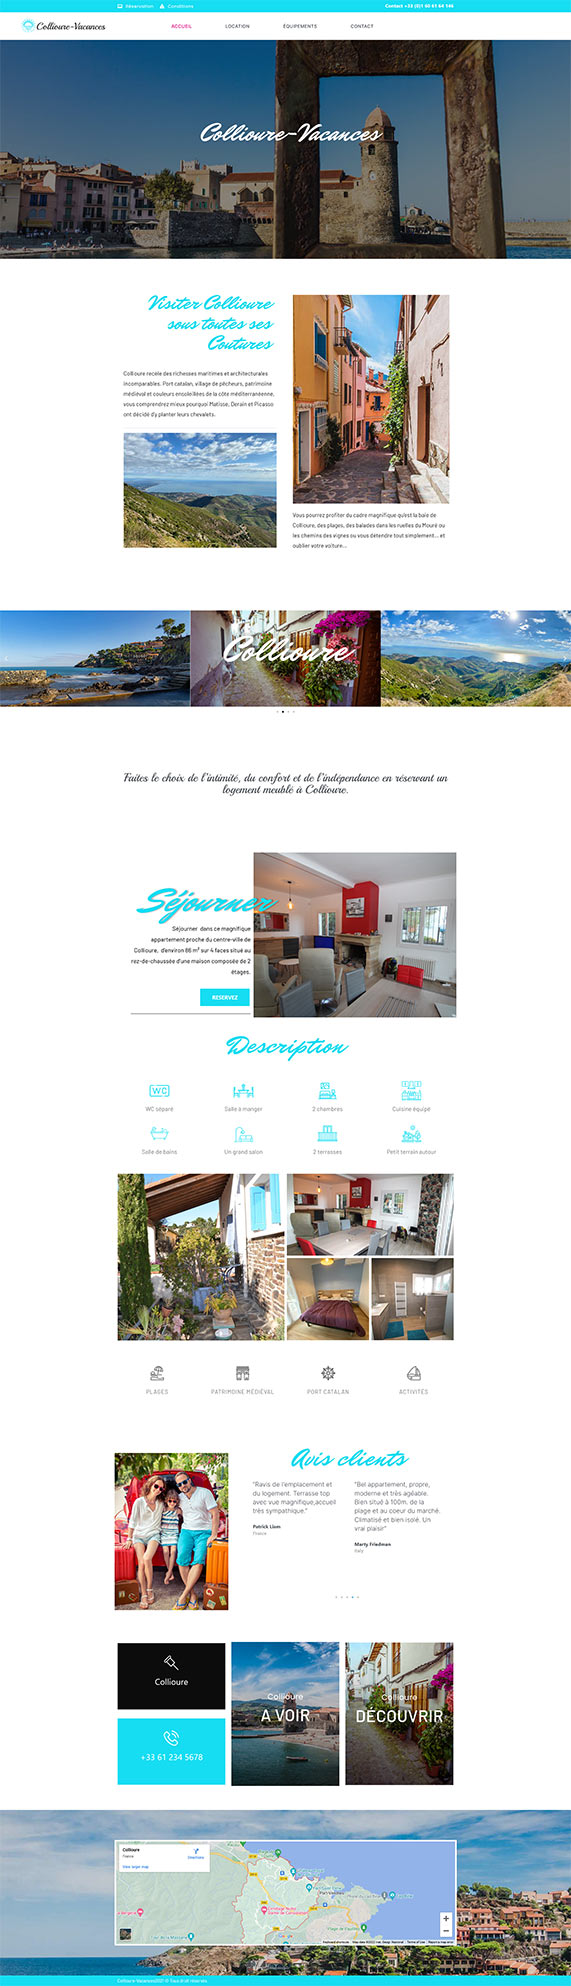 création web site suisse romande